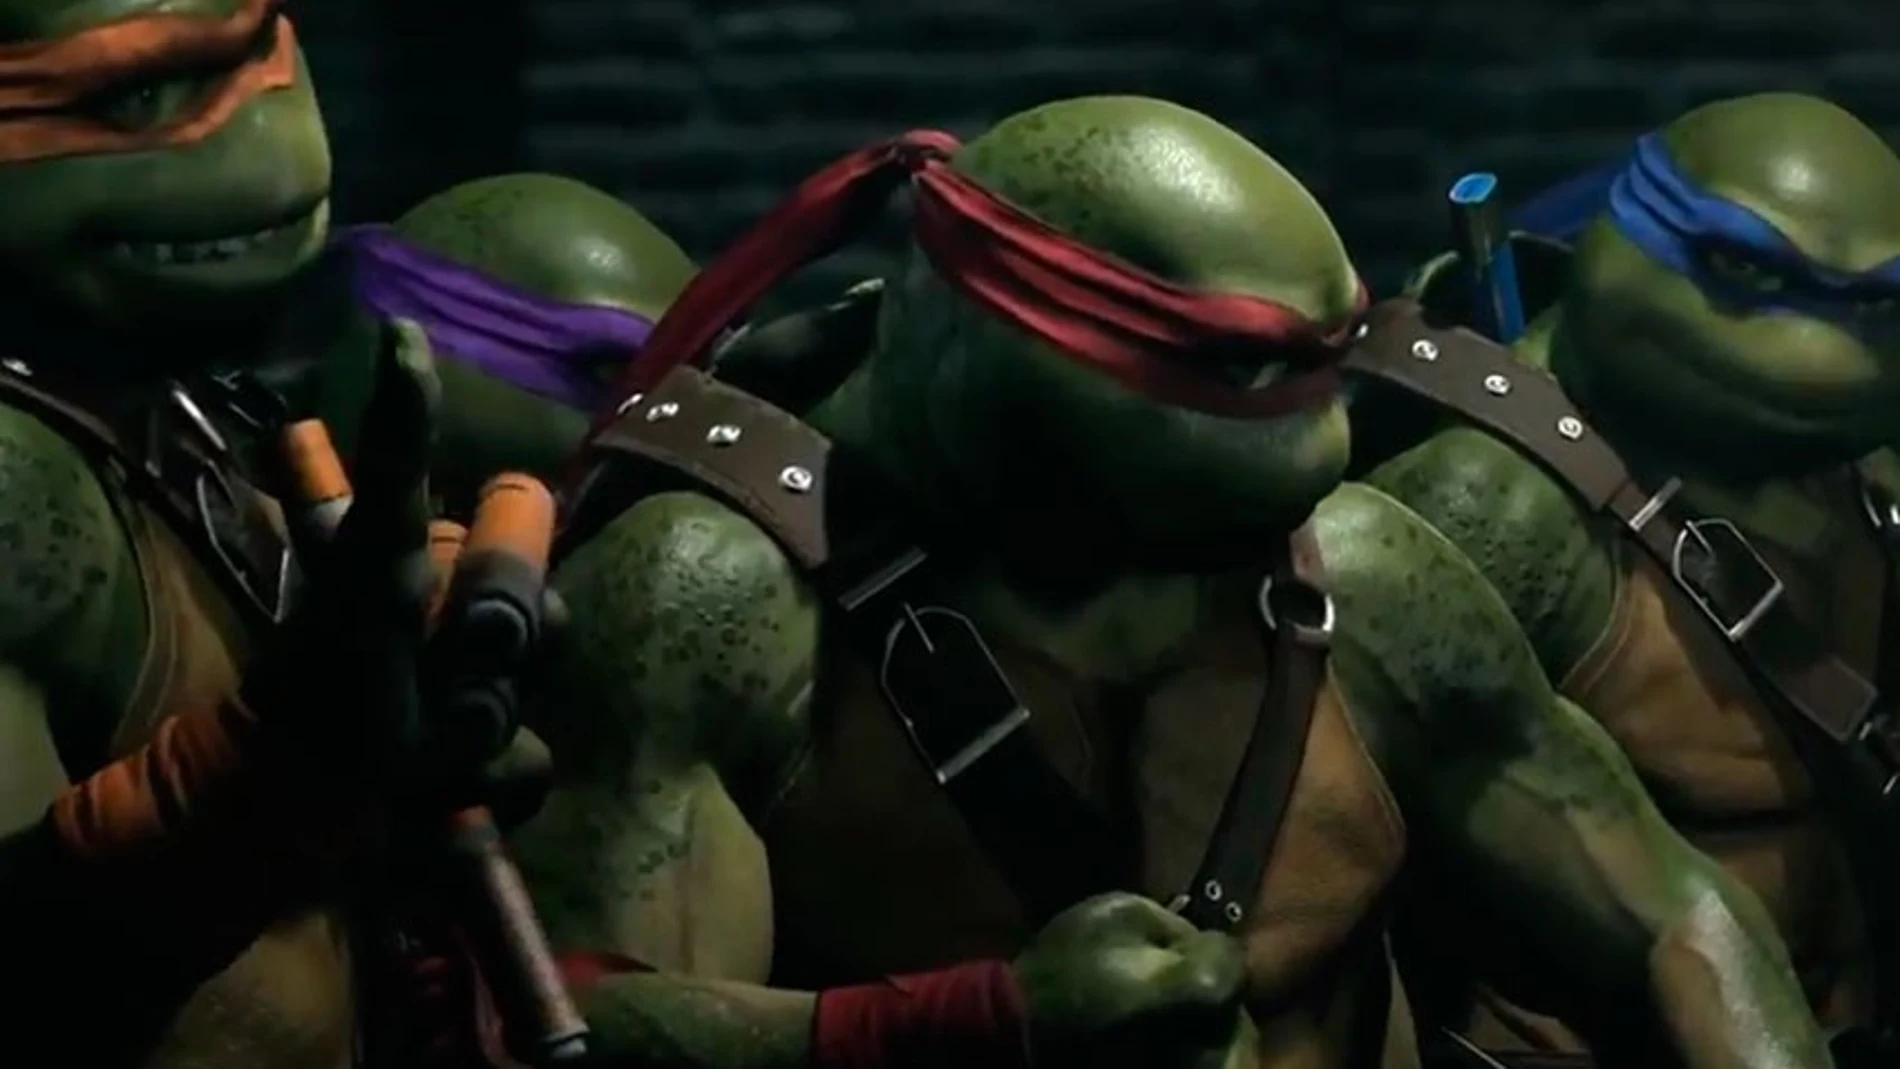 Leonardo, Raphael, Michelangelo y Donatello, Las Tortugas Ninja llegarán a Injustice 2